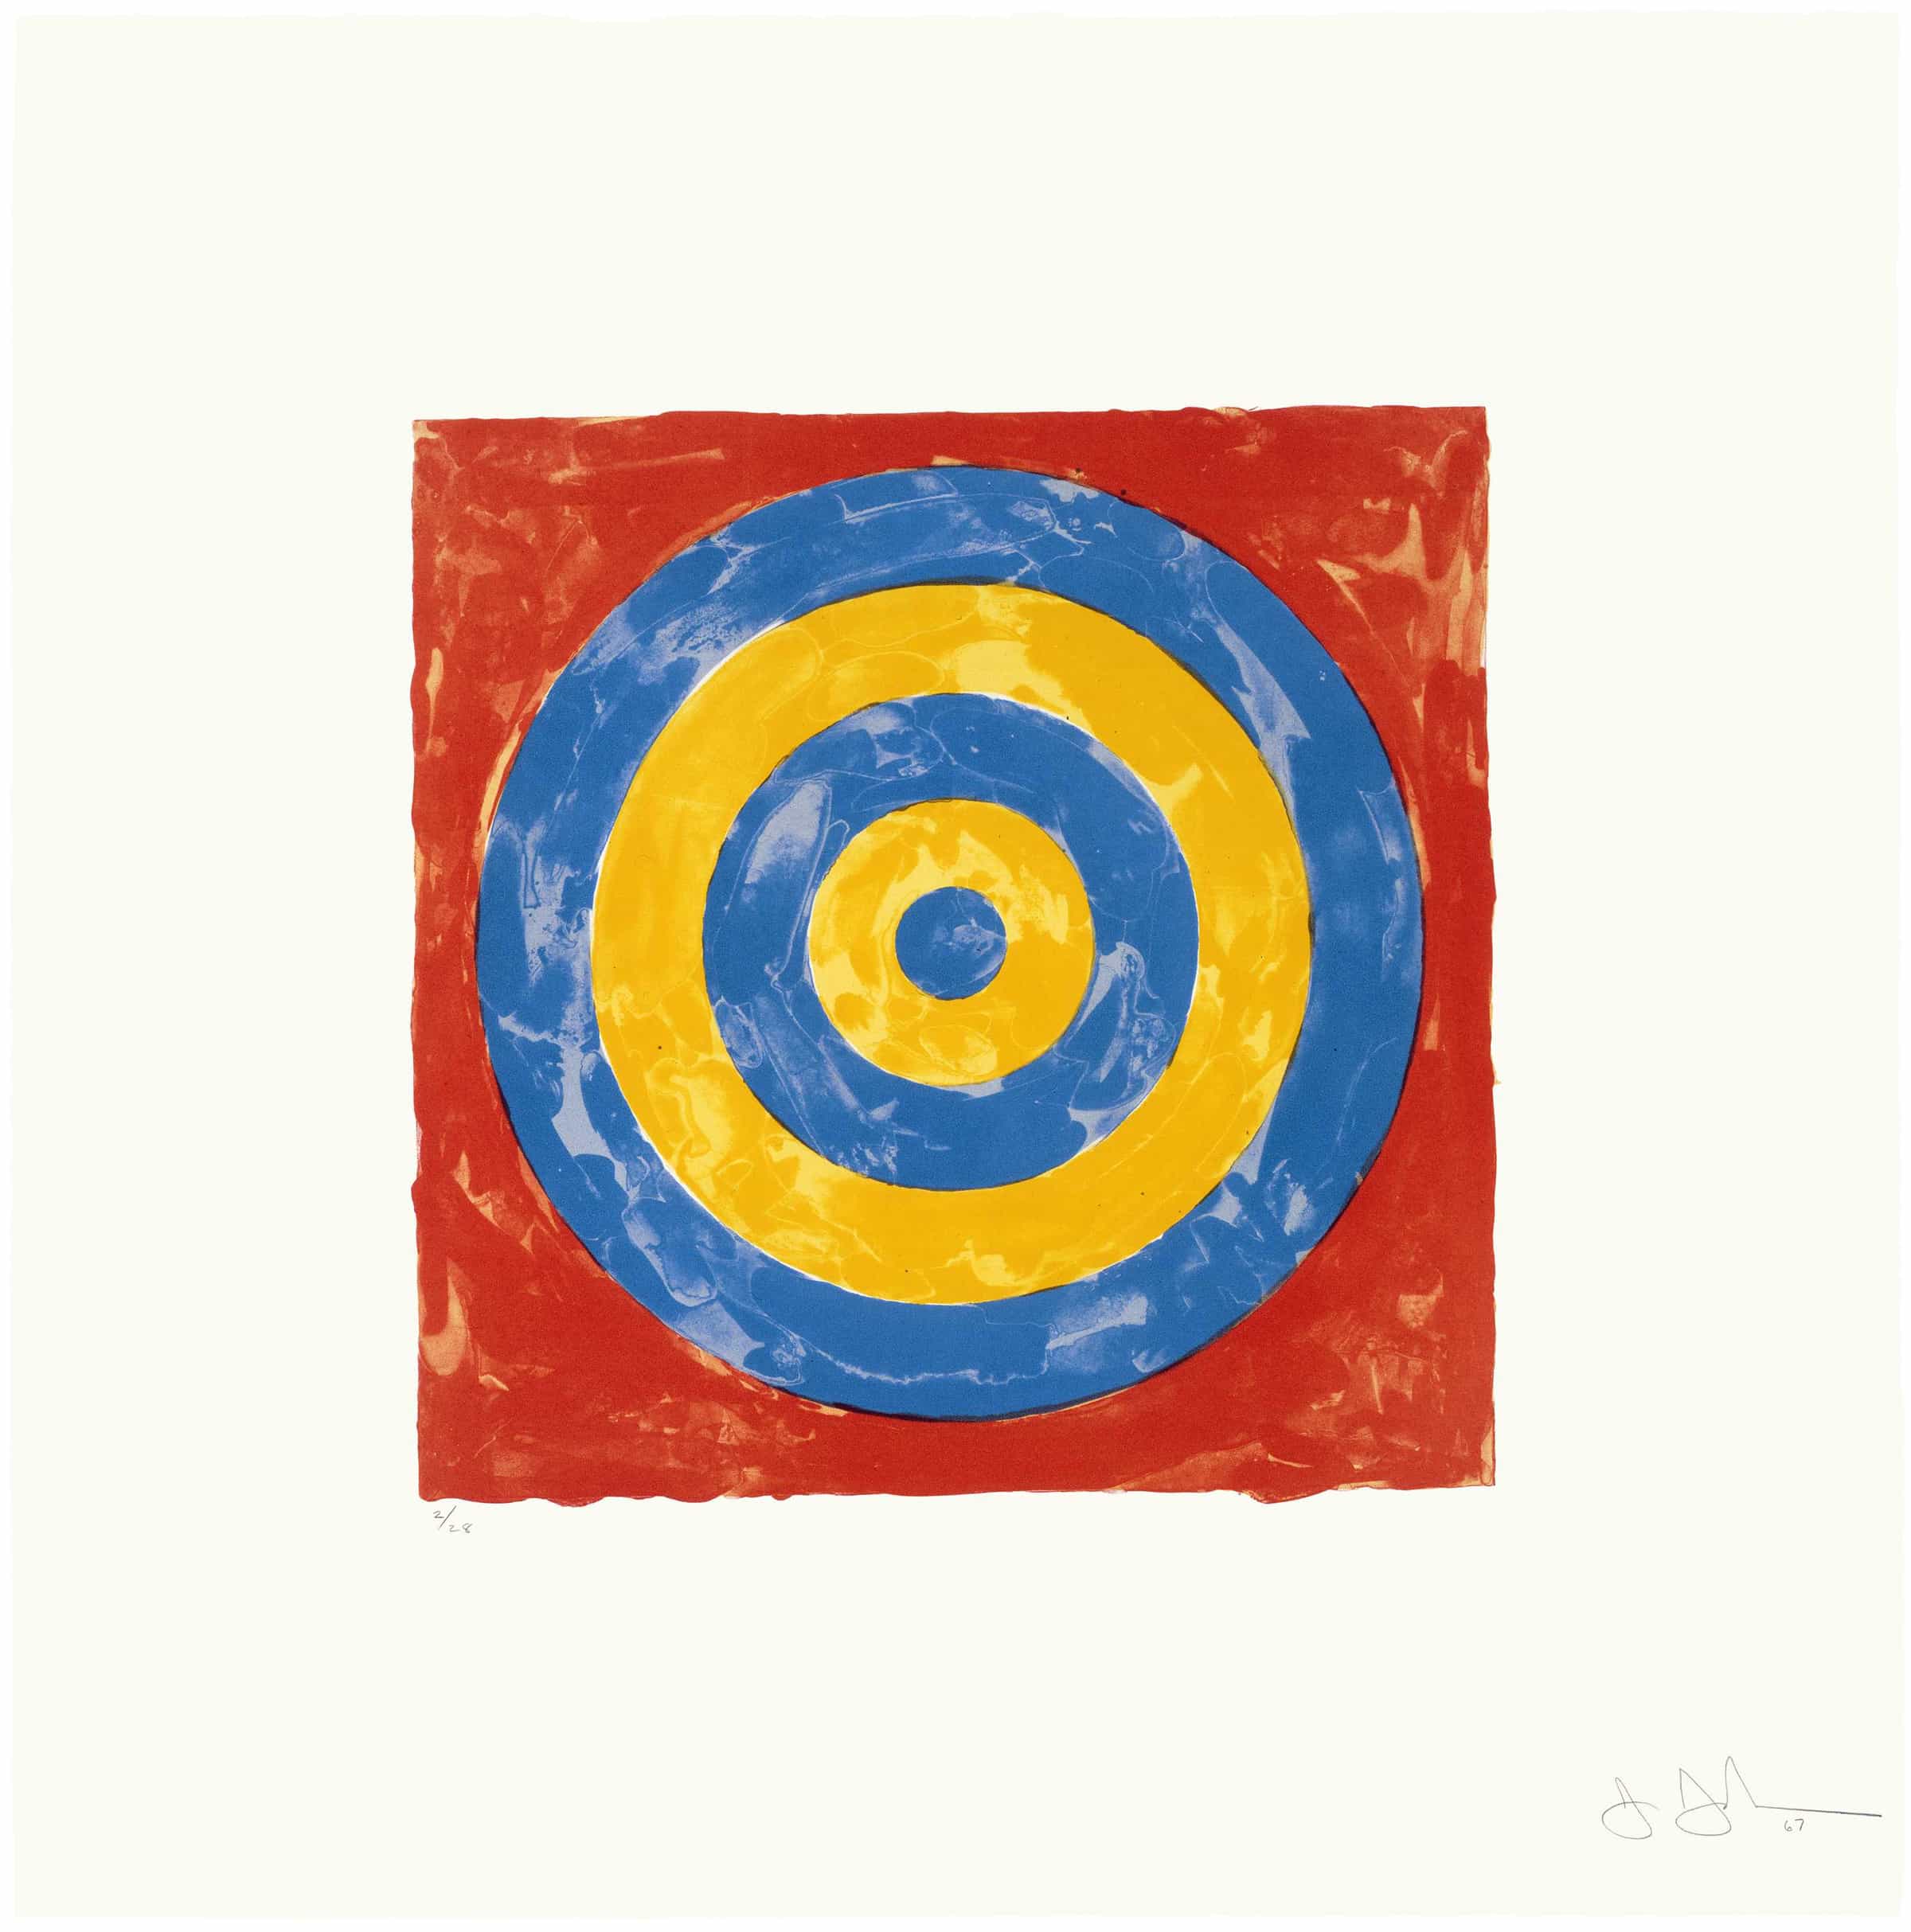 Jasper Johns, Target, 1967